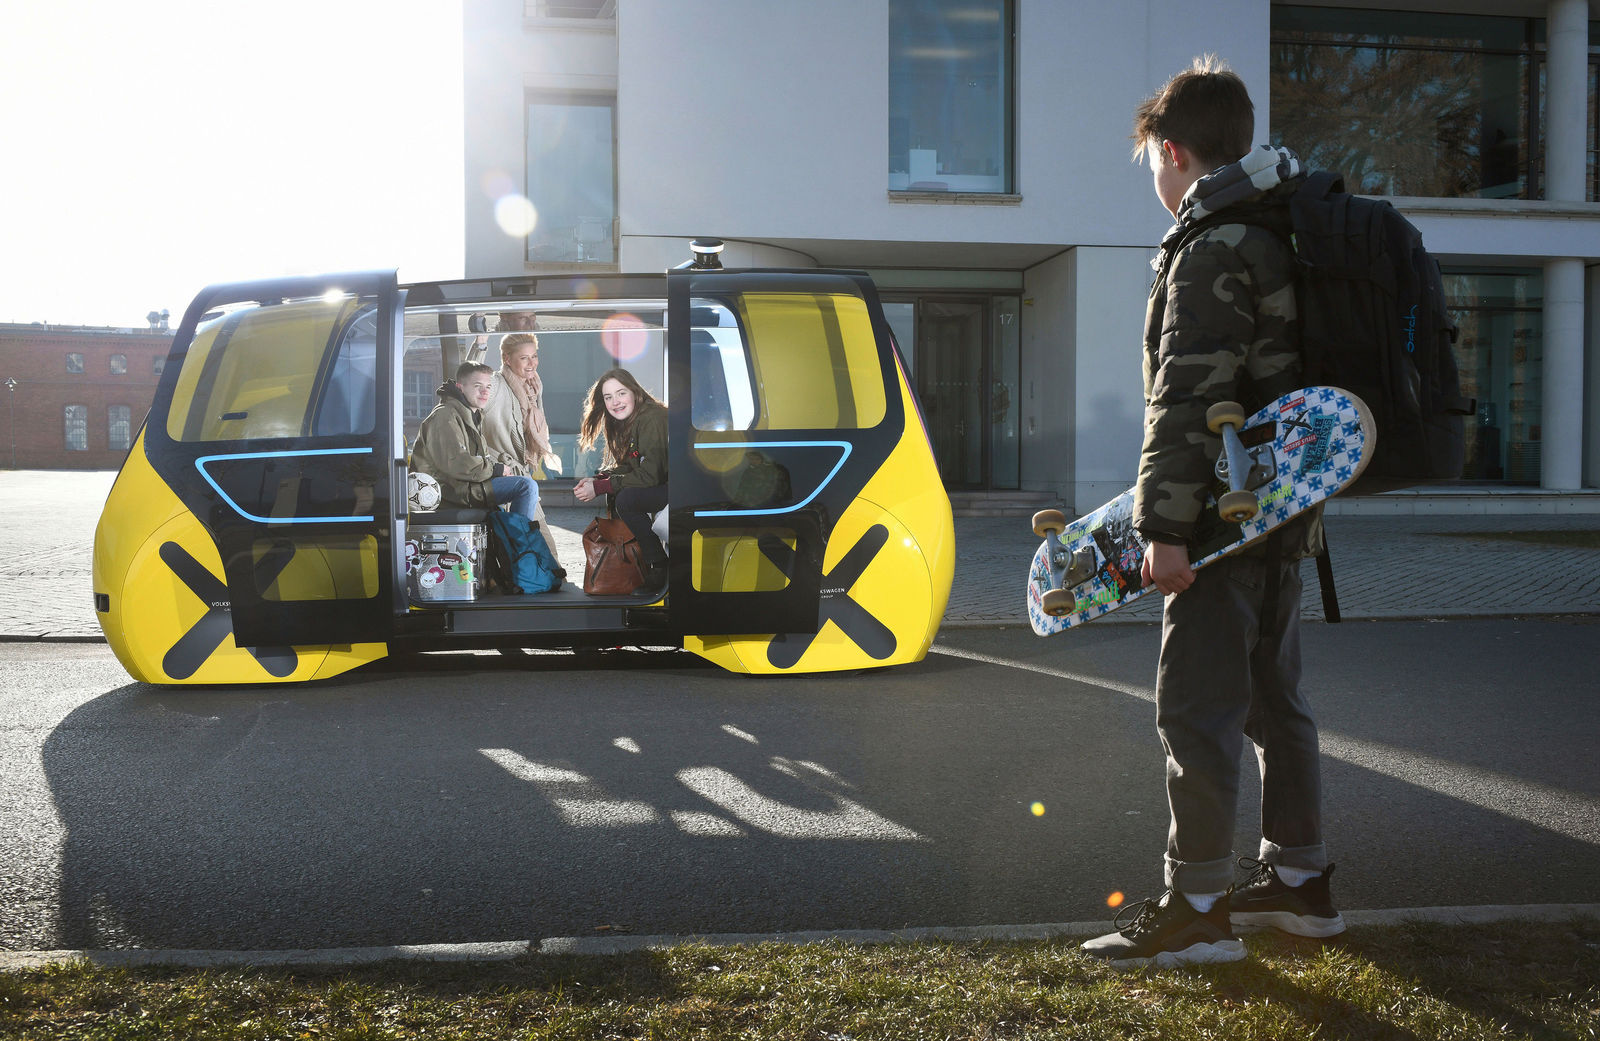 Mobilität für alle – auf Knopfdruck: Volkswagen Konzern präsentiert jüngste Variante des SEDRIC